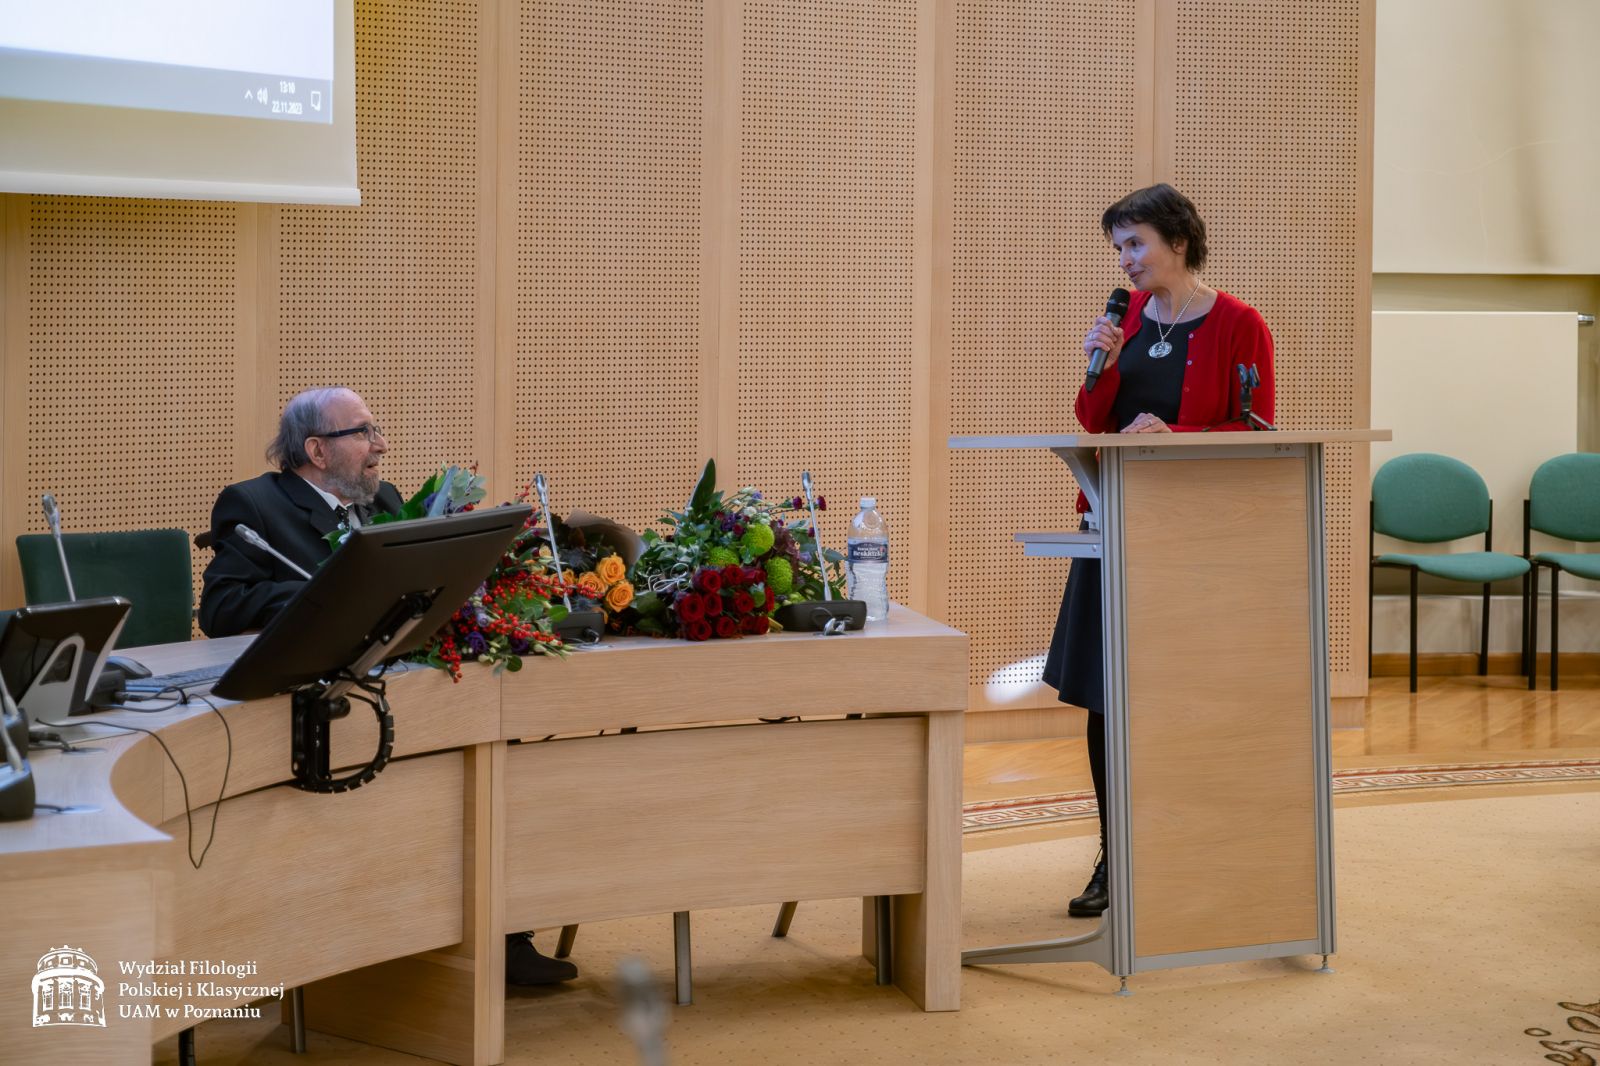 Przy mównicy stoi kobieta w średnim wieku, ubrana w ciemną sukienkę i czerwony sweterek, krewna prof. Lewandowskiego, przemawia do mikrofonu.